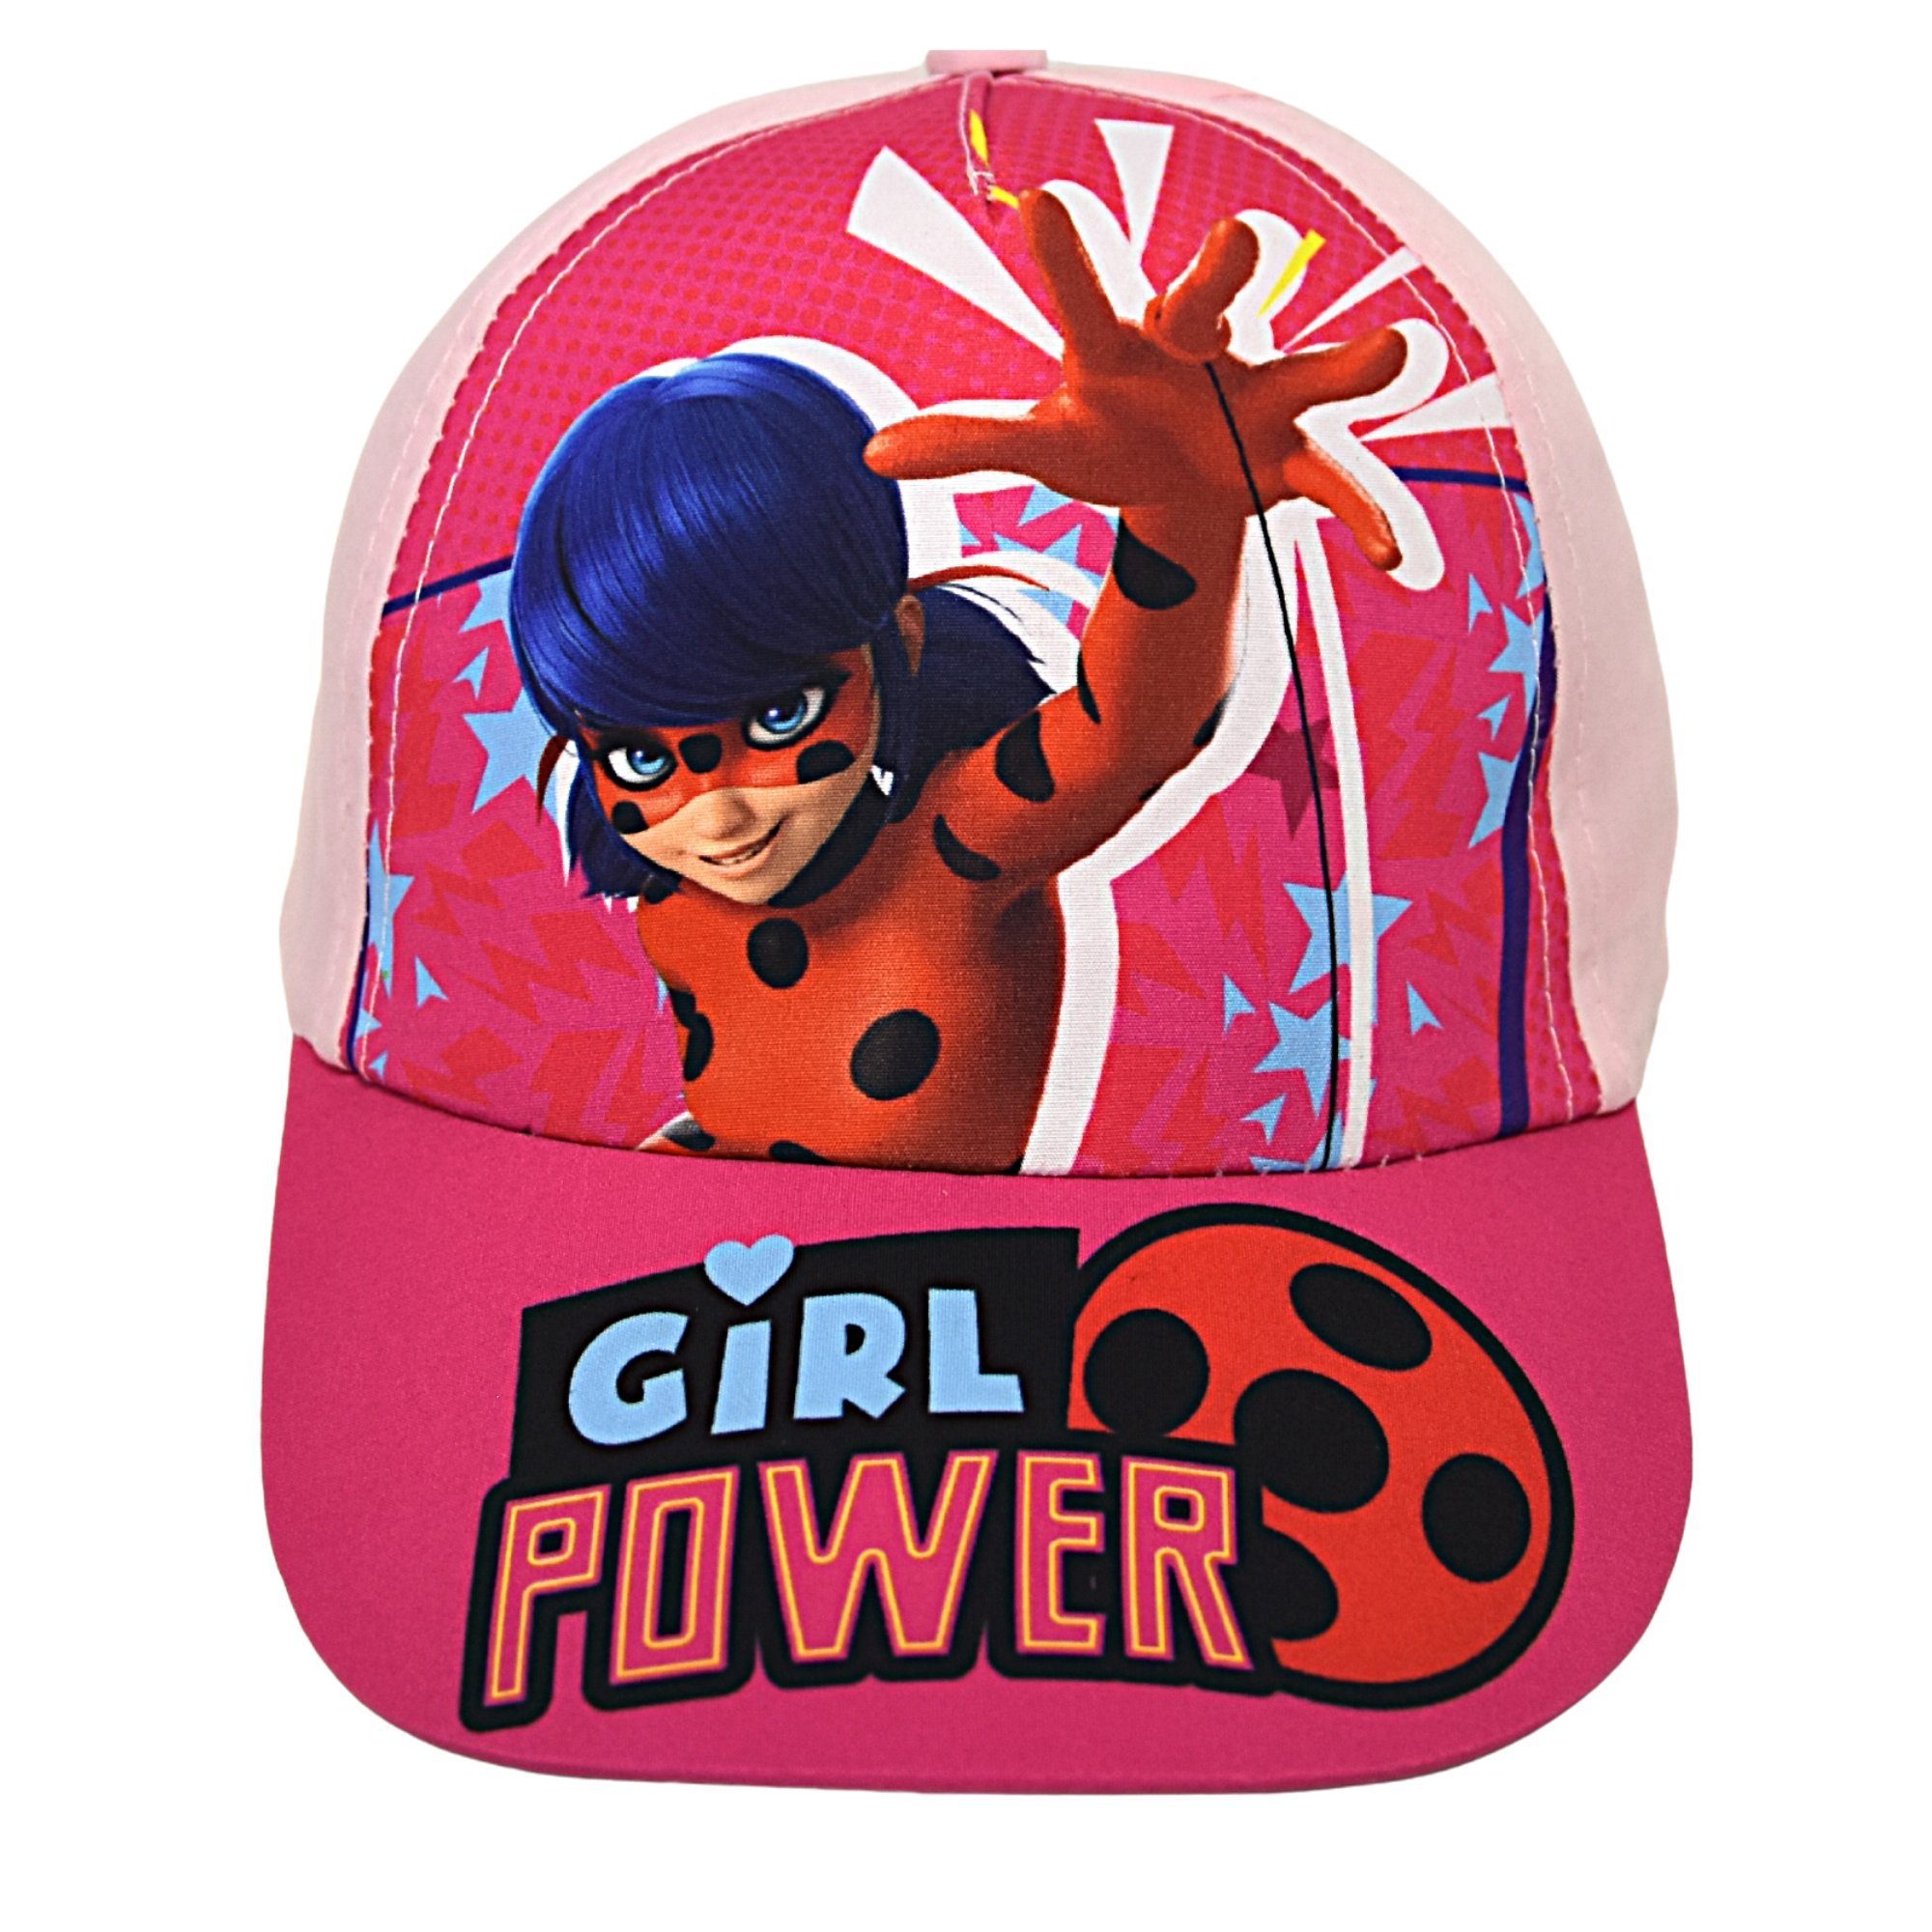 Miraculous - Ladybug Baseball Cap Girl Power Sommerkappe Größe 52-54 cm Rosa | Baseball Caps